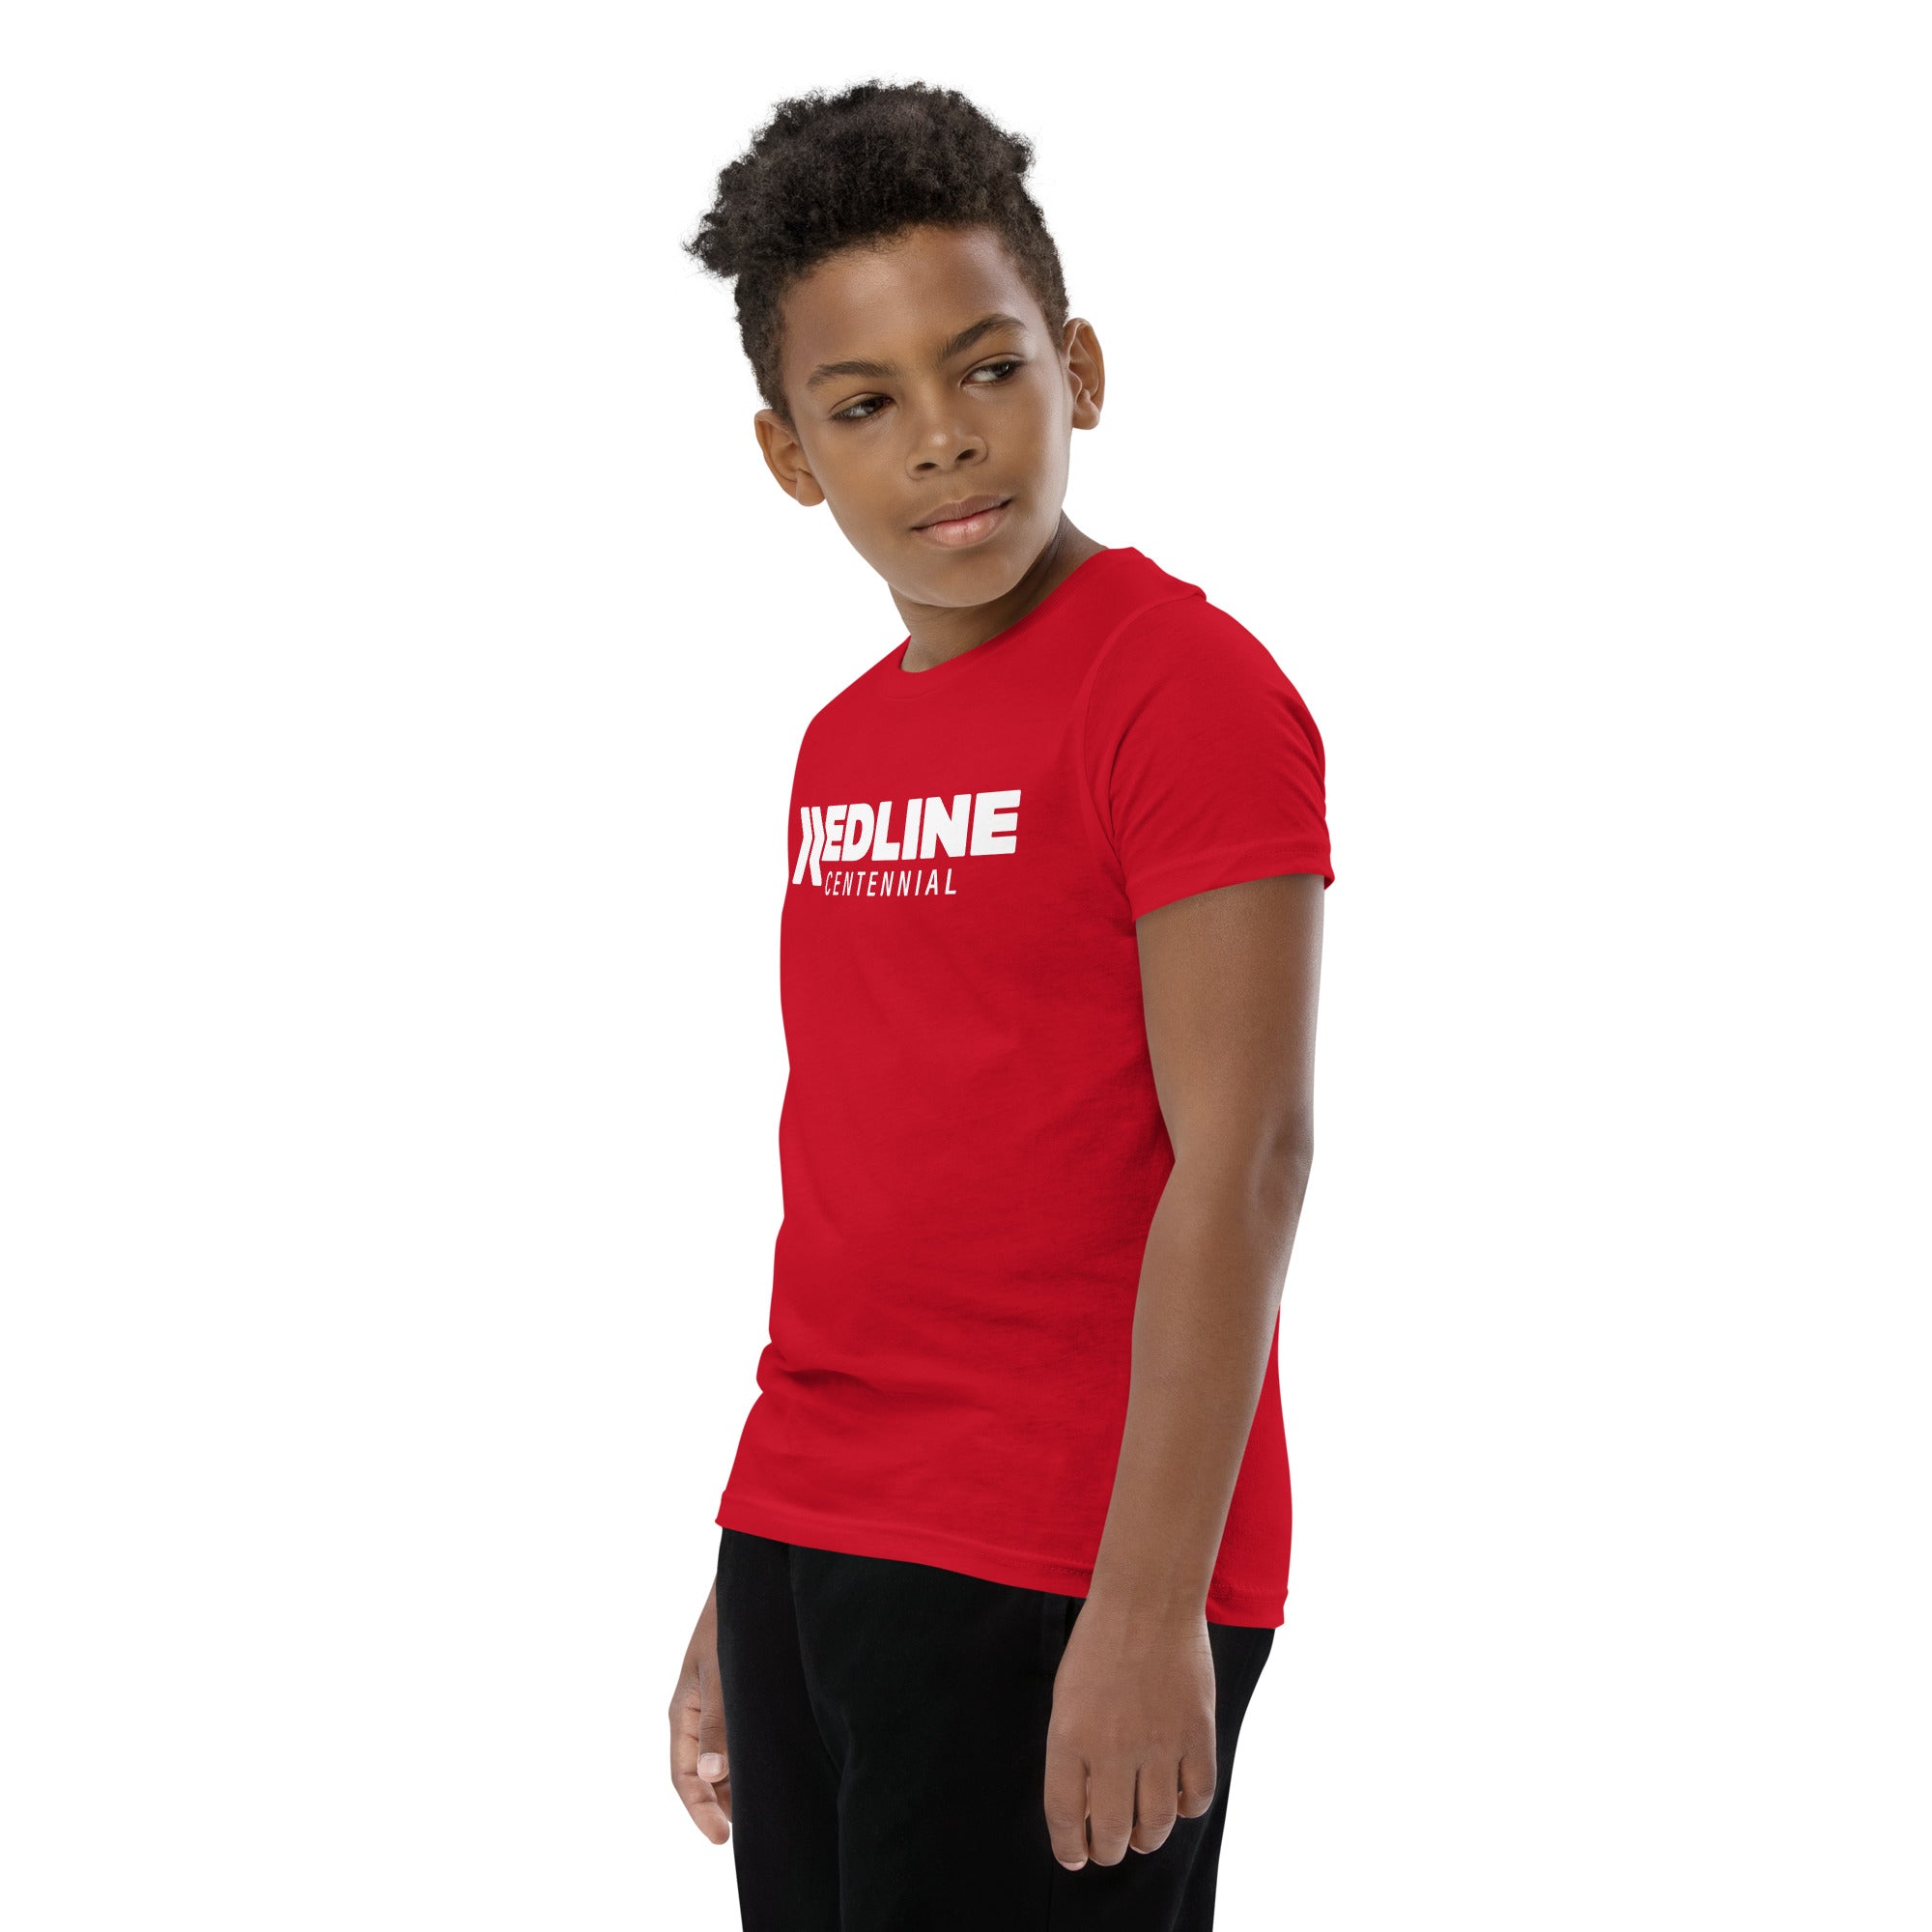 Centennial Logo W - Red Youth Short Sleeve T-Shirt